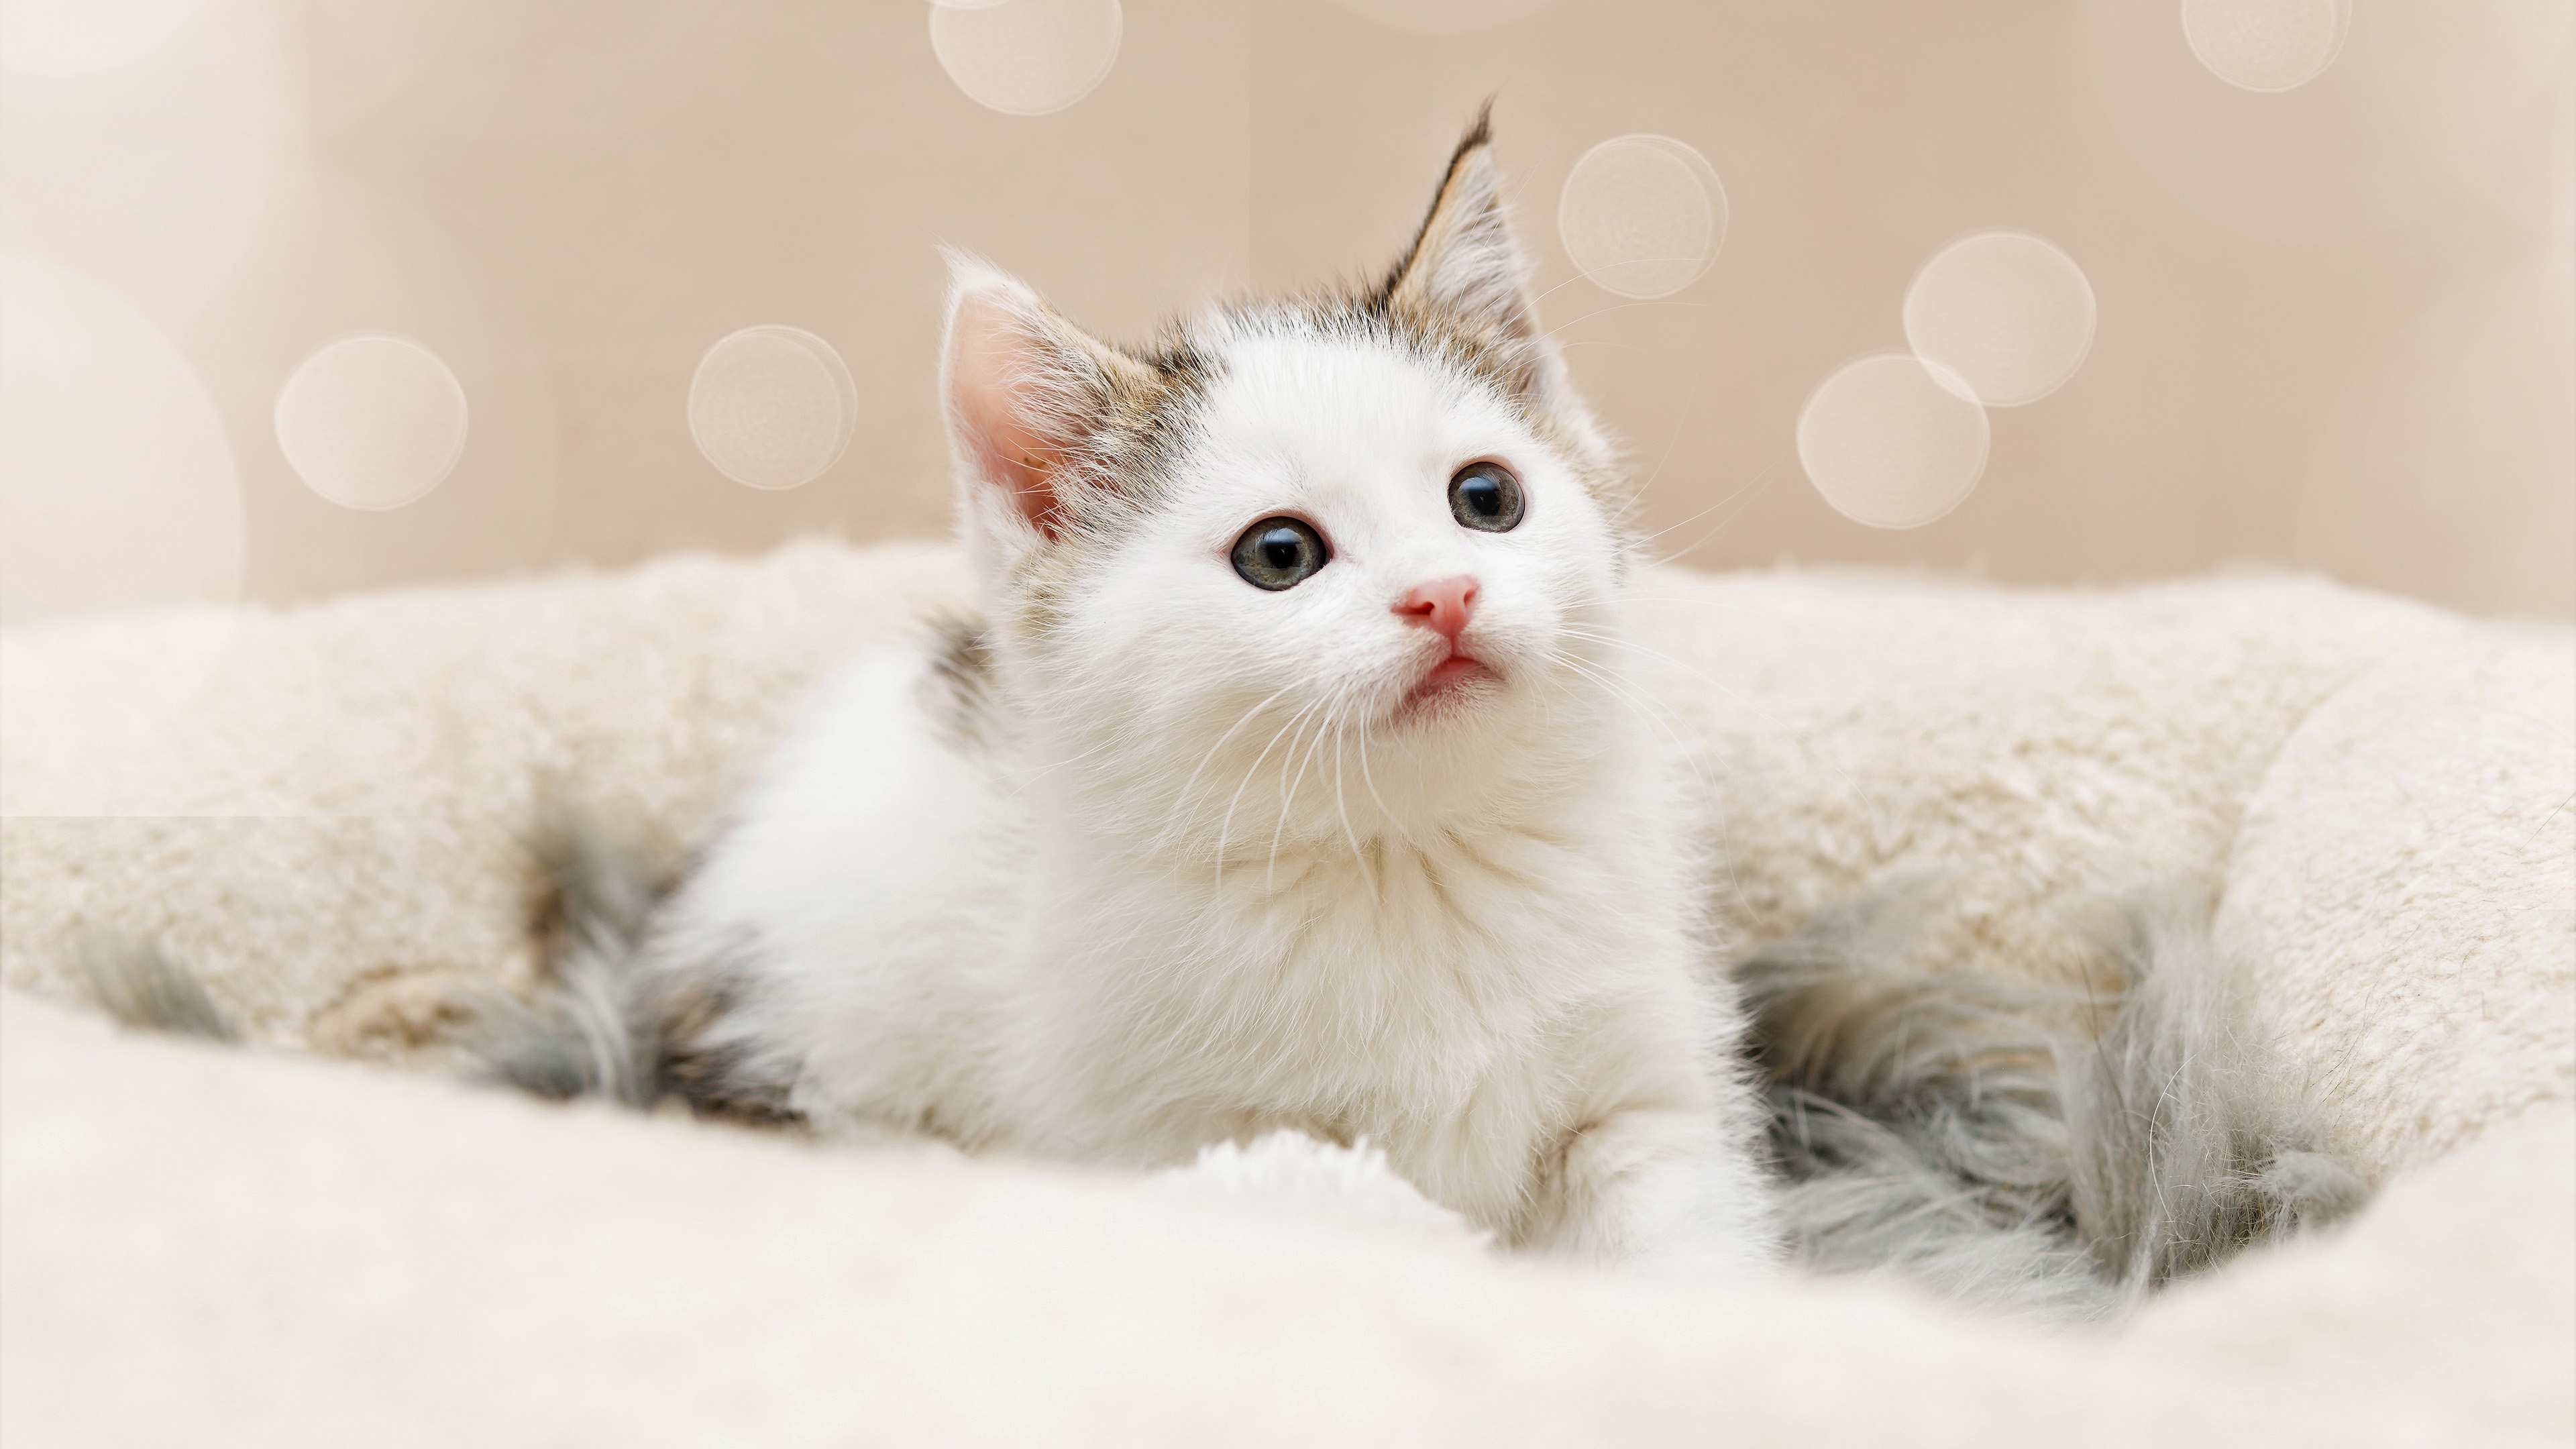 Cute white kitten looking away